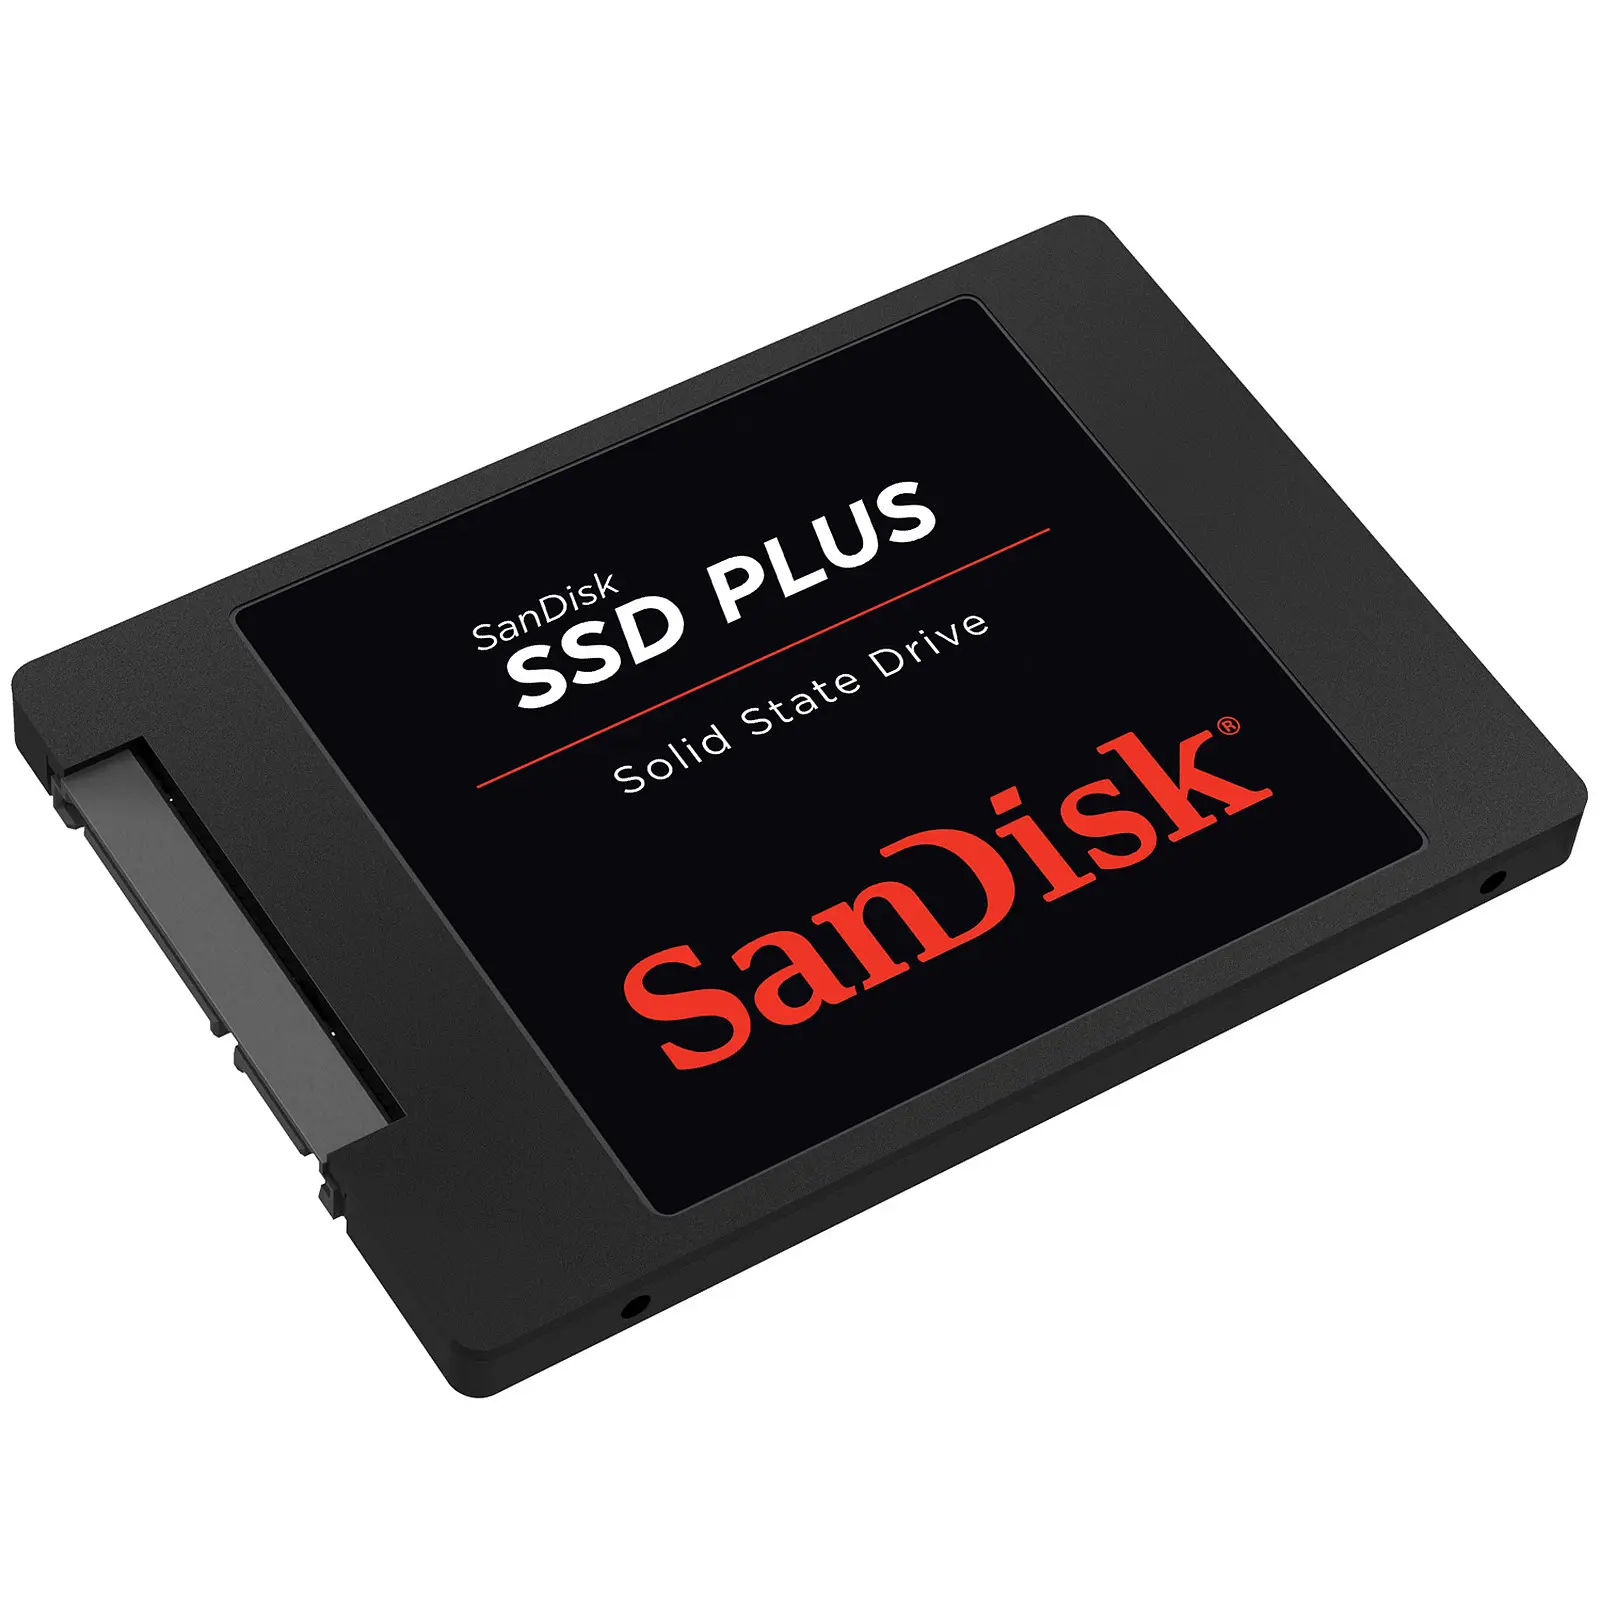 instalar un ssd y hdd en una misma cpu - Dónde es mejor instalar los programas en SSD o HDD